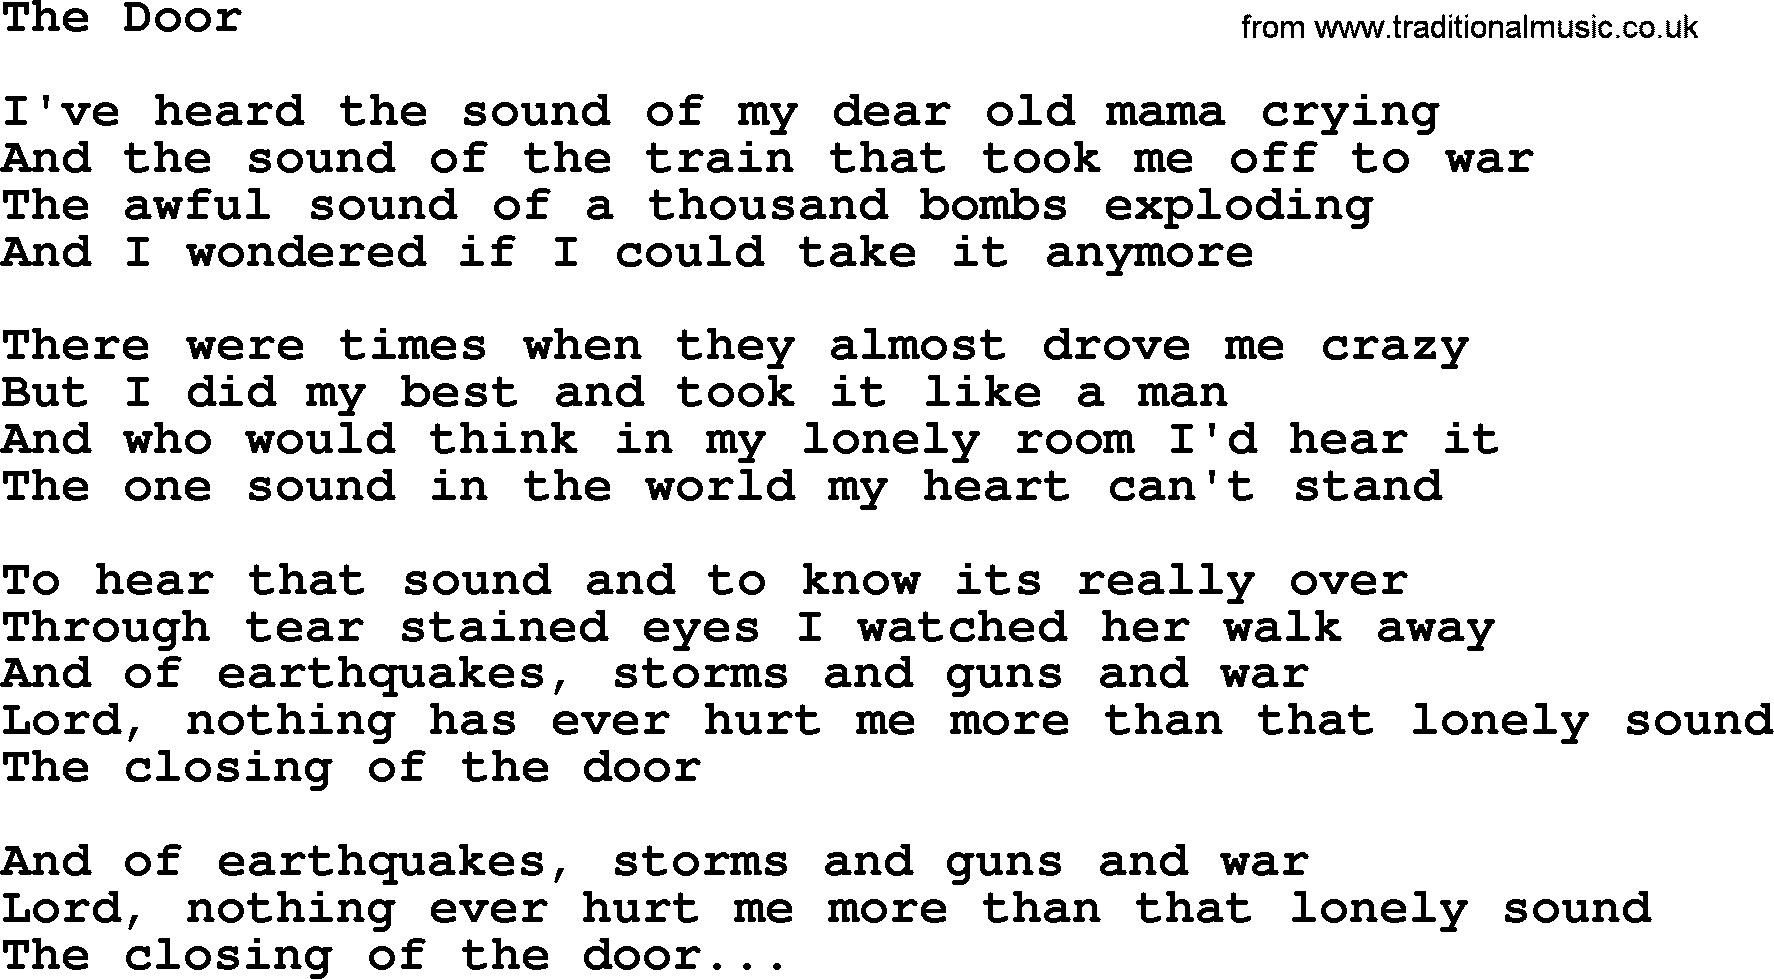 George Jones song: The Door, lyrics